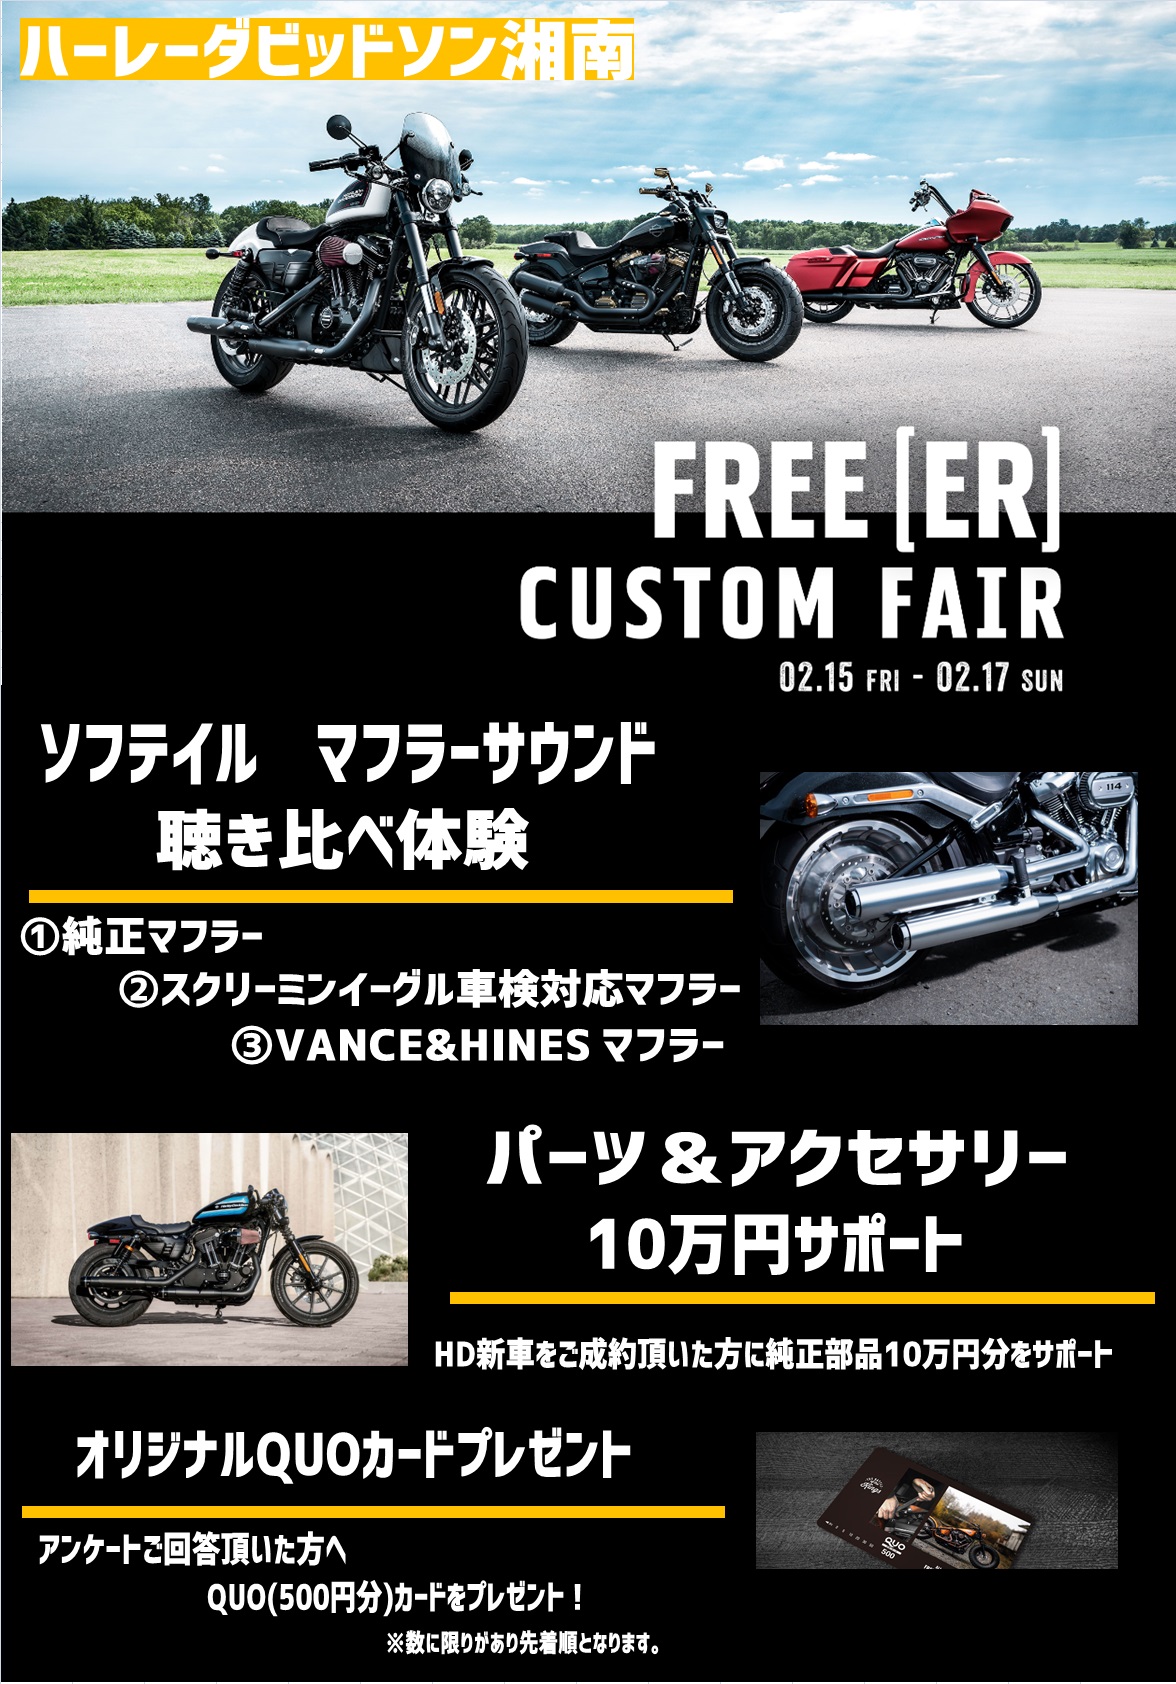 明日からディーラーオープンハウス開催 最新情報 U Media ユーメディア 中古バイク 新車バイク探しの決定版 神奈川 東京でバイク探すならユーメディア